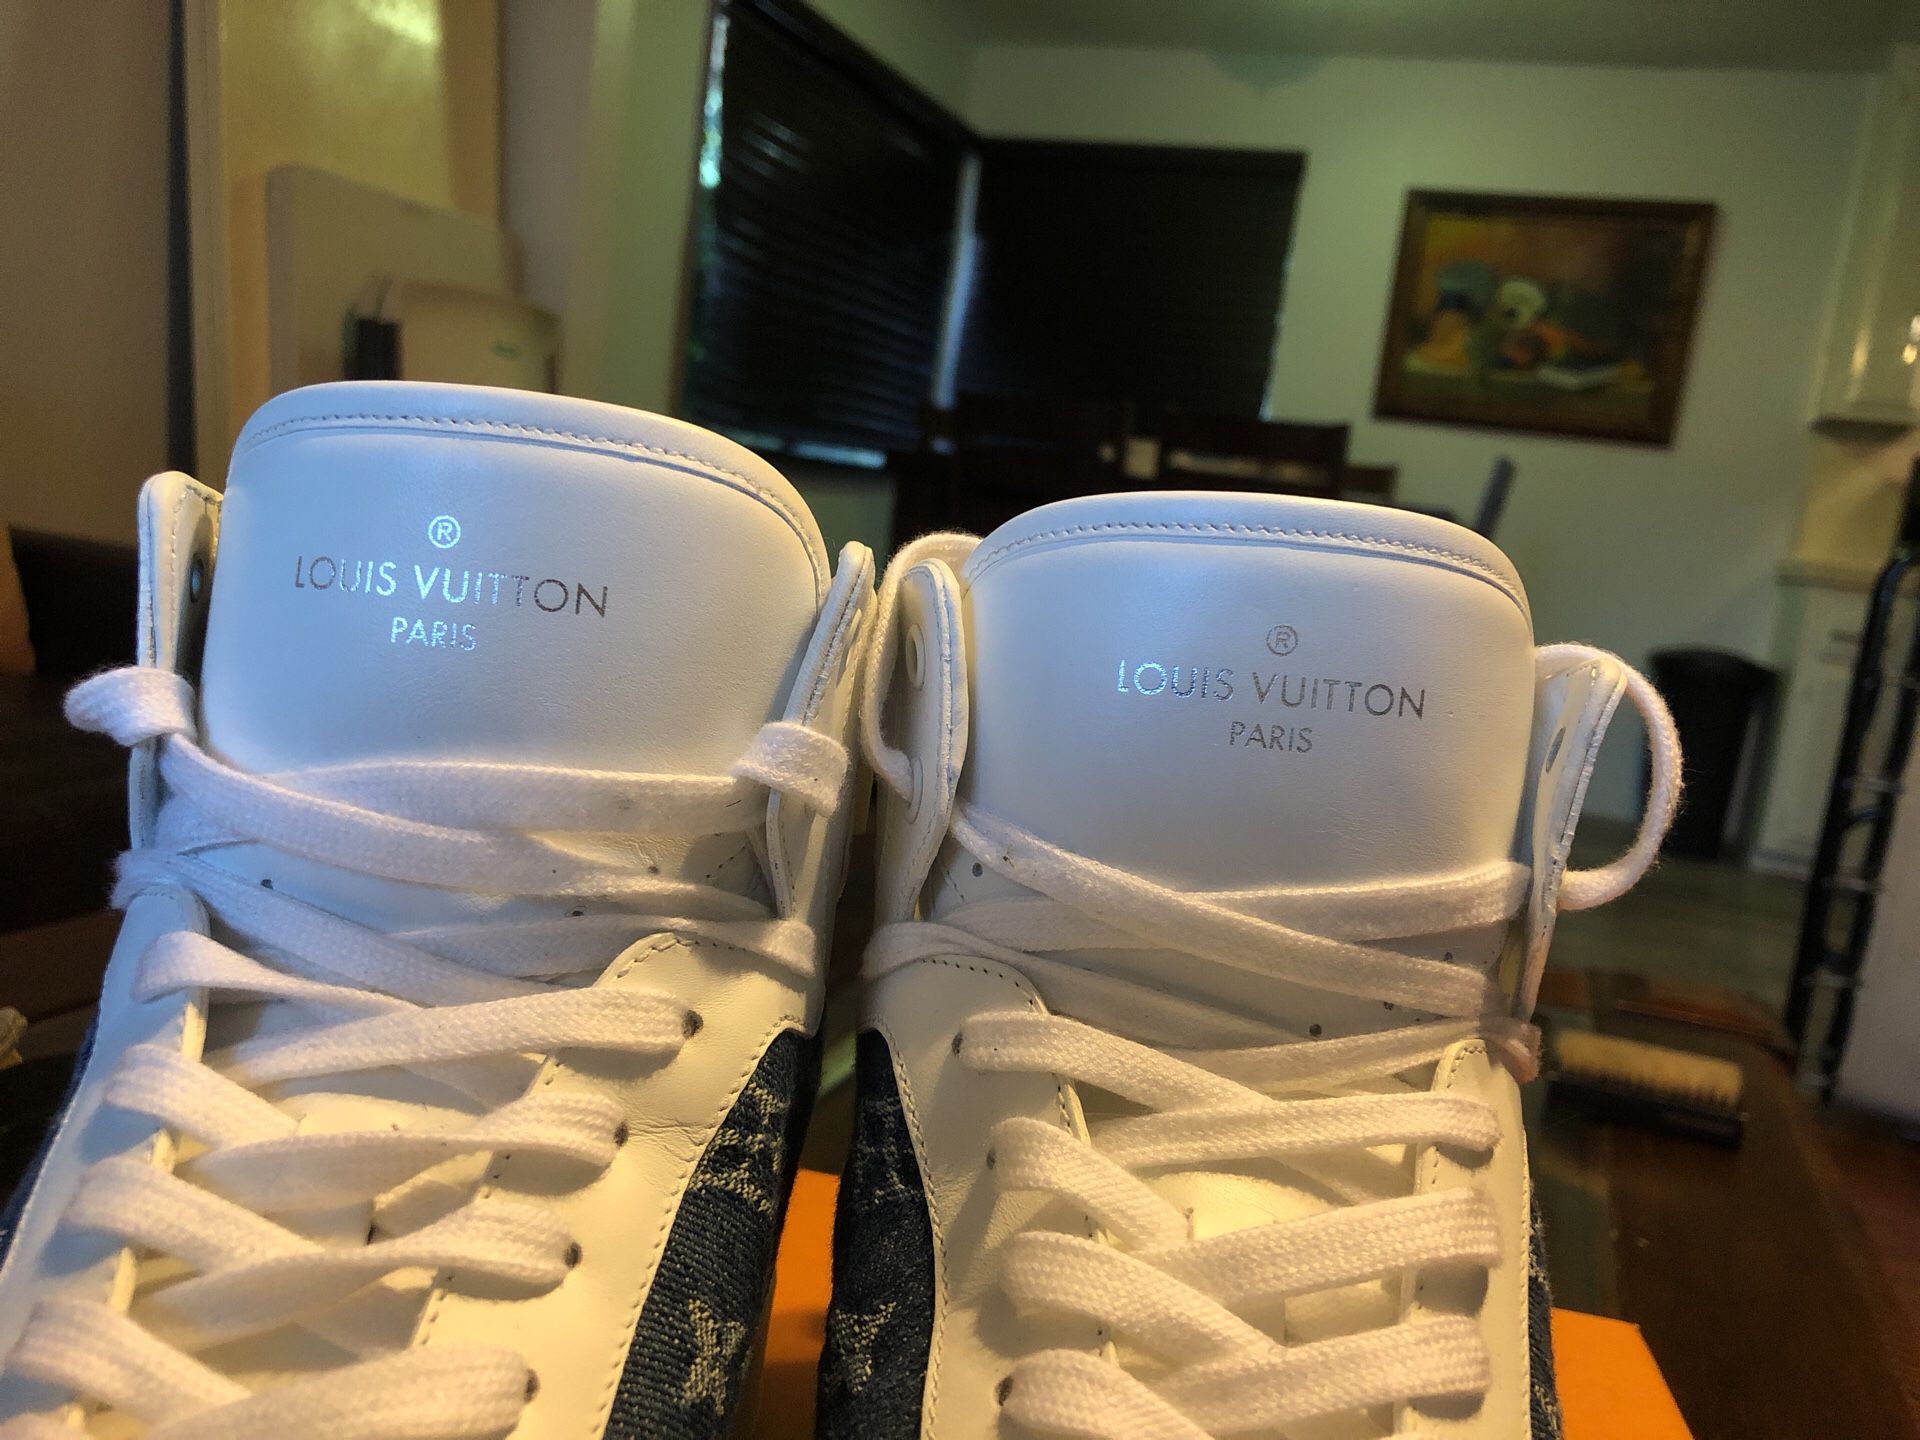 Louis Vuitton Rivoli Sneaker 9 UK  10 US for Sale in Las Vegas, NV -  OfferUp